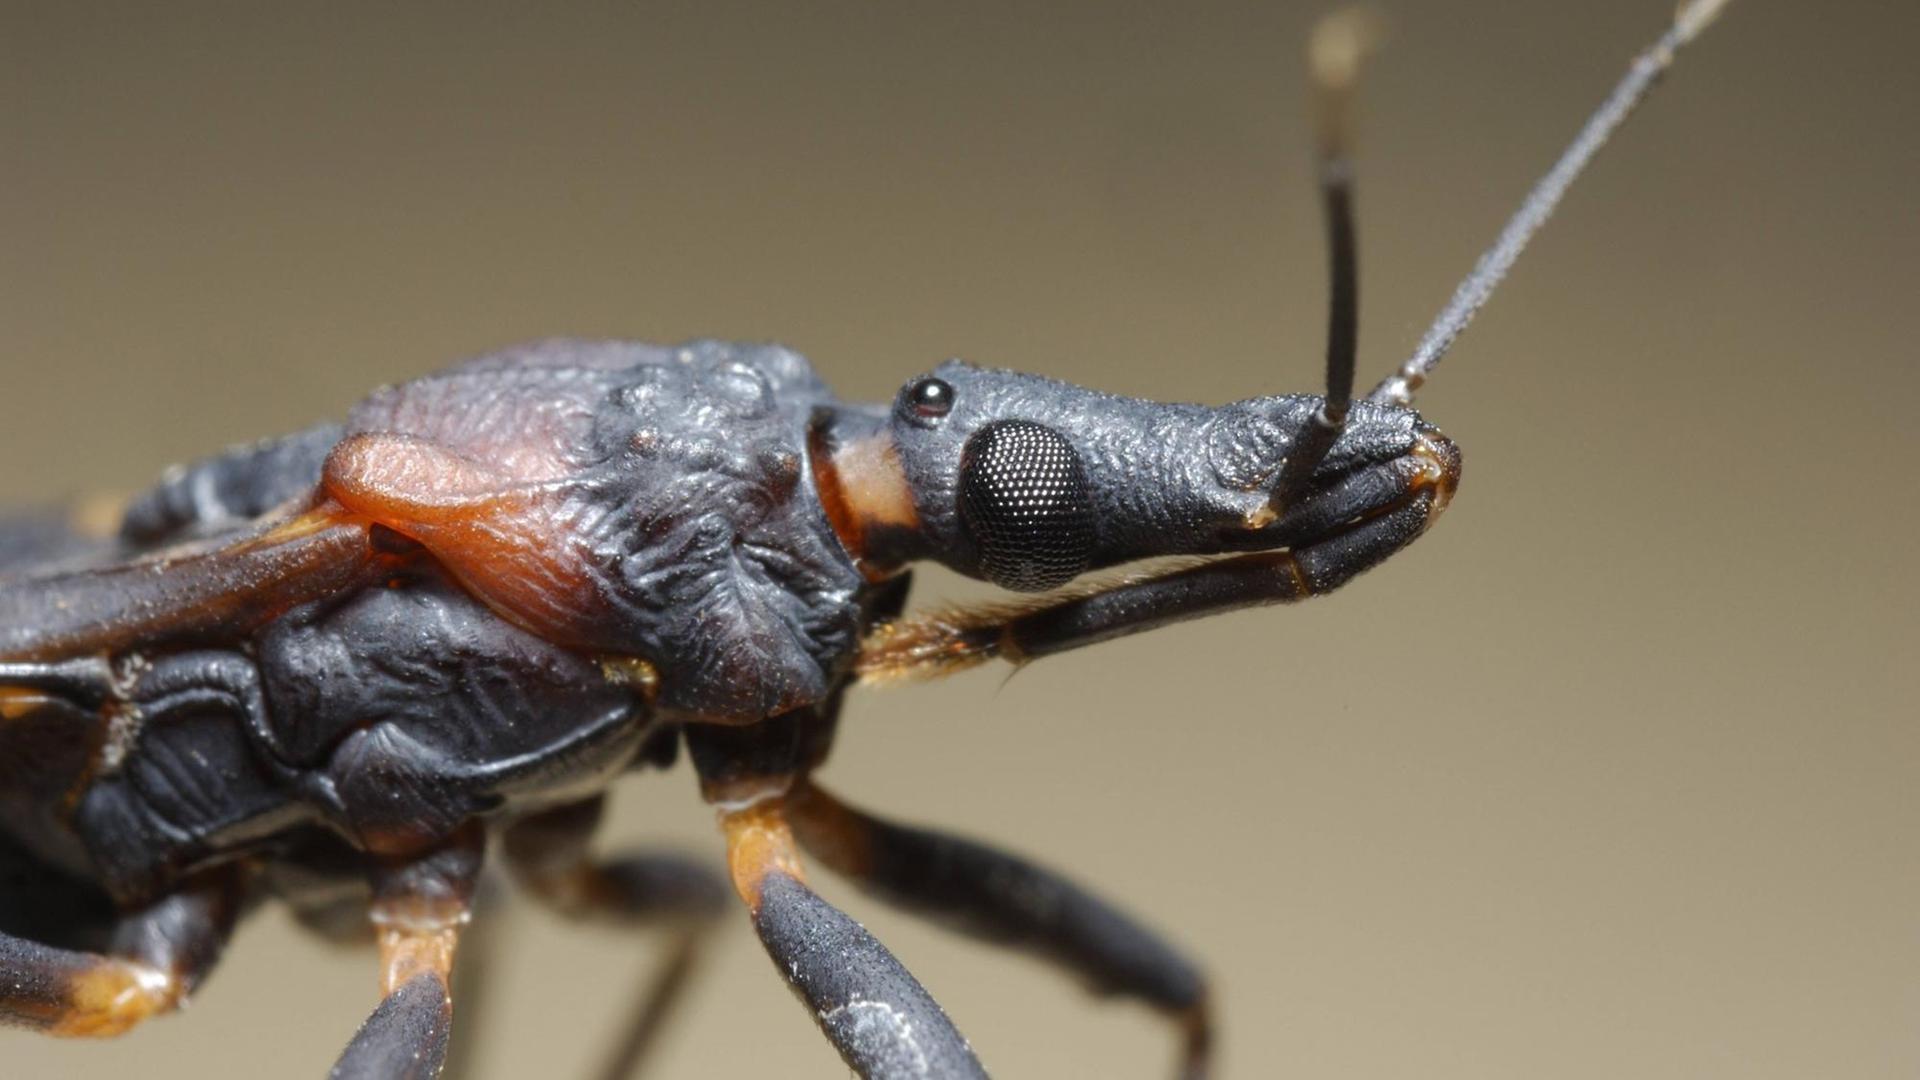 Nahaufnahme einer Raubwanze - sie gilt als Überträger der Parasitenkrankheit Chagas.